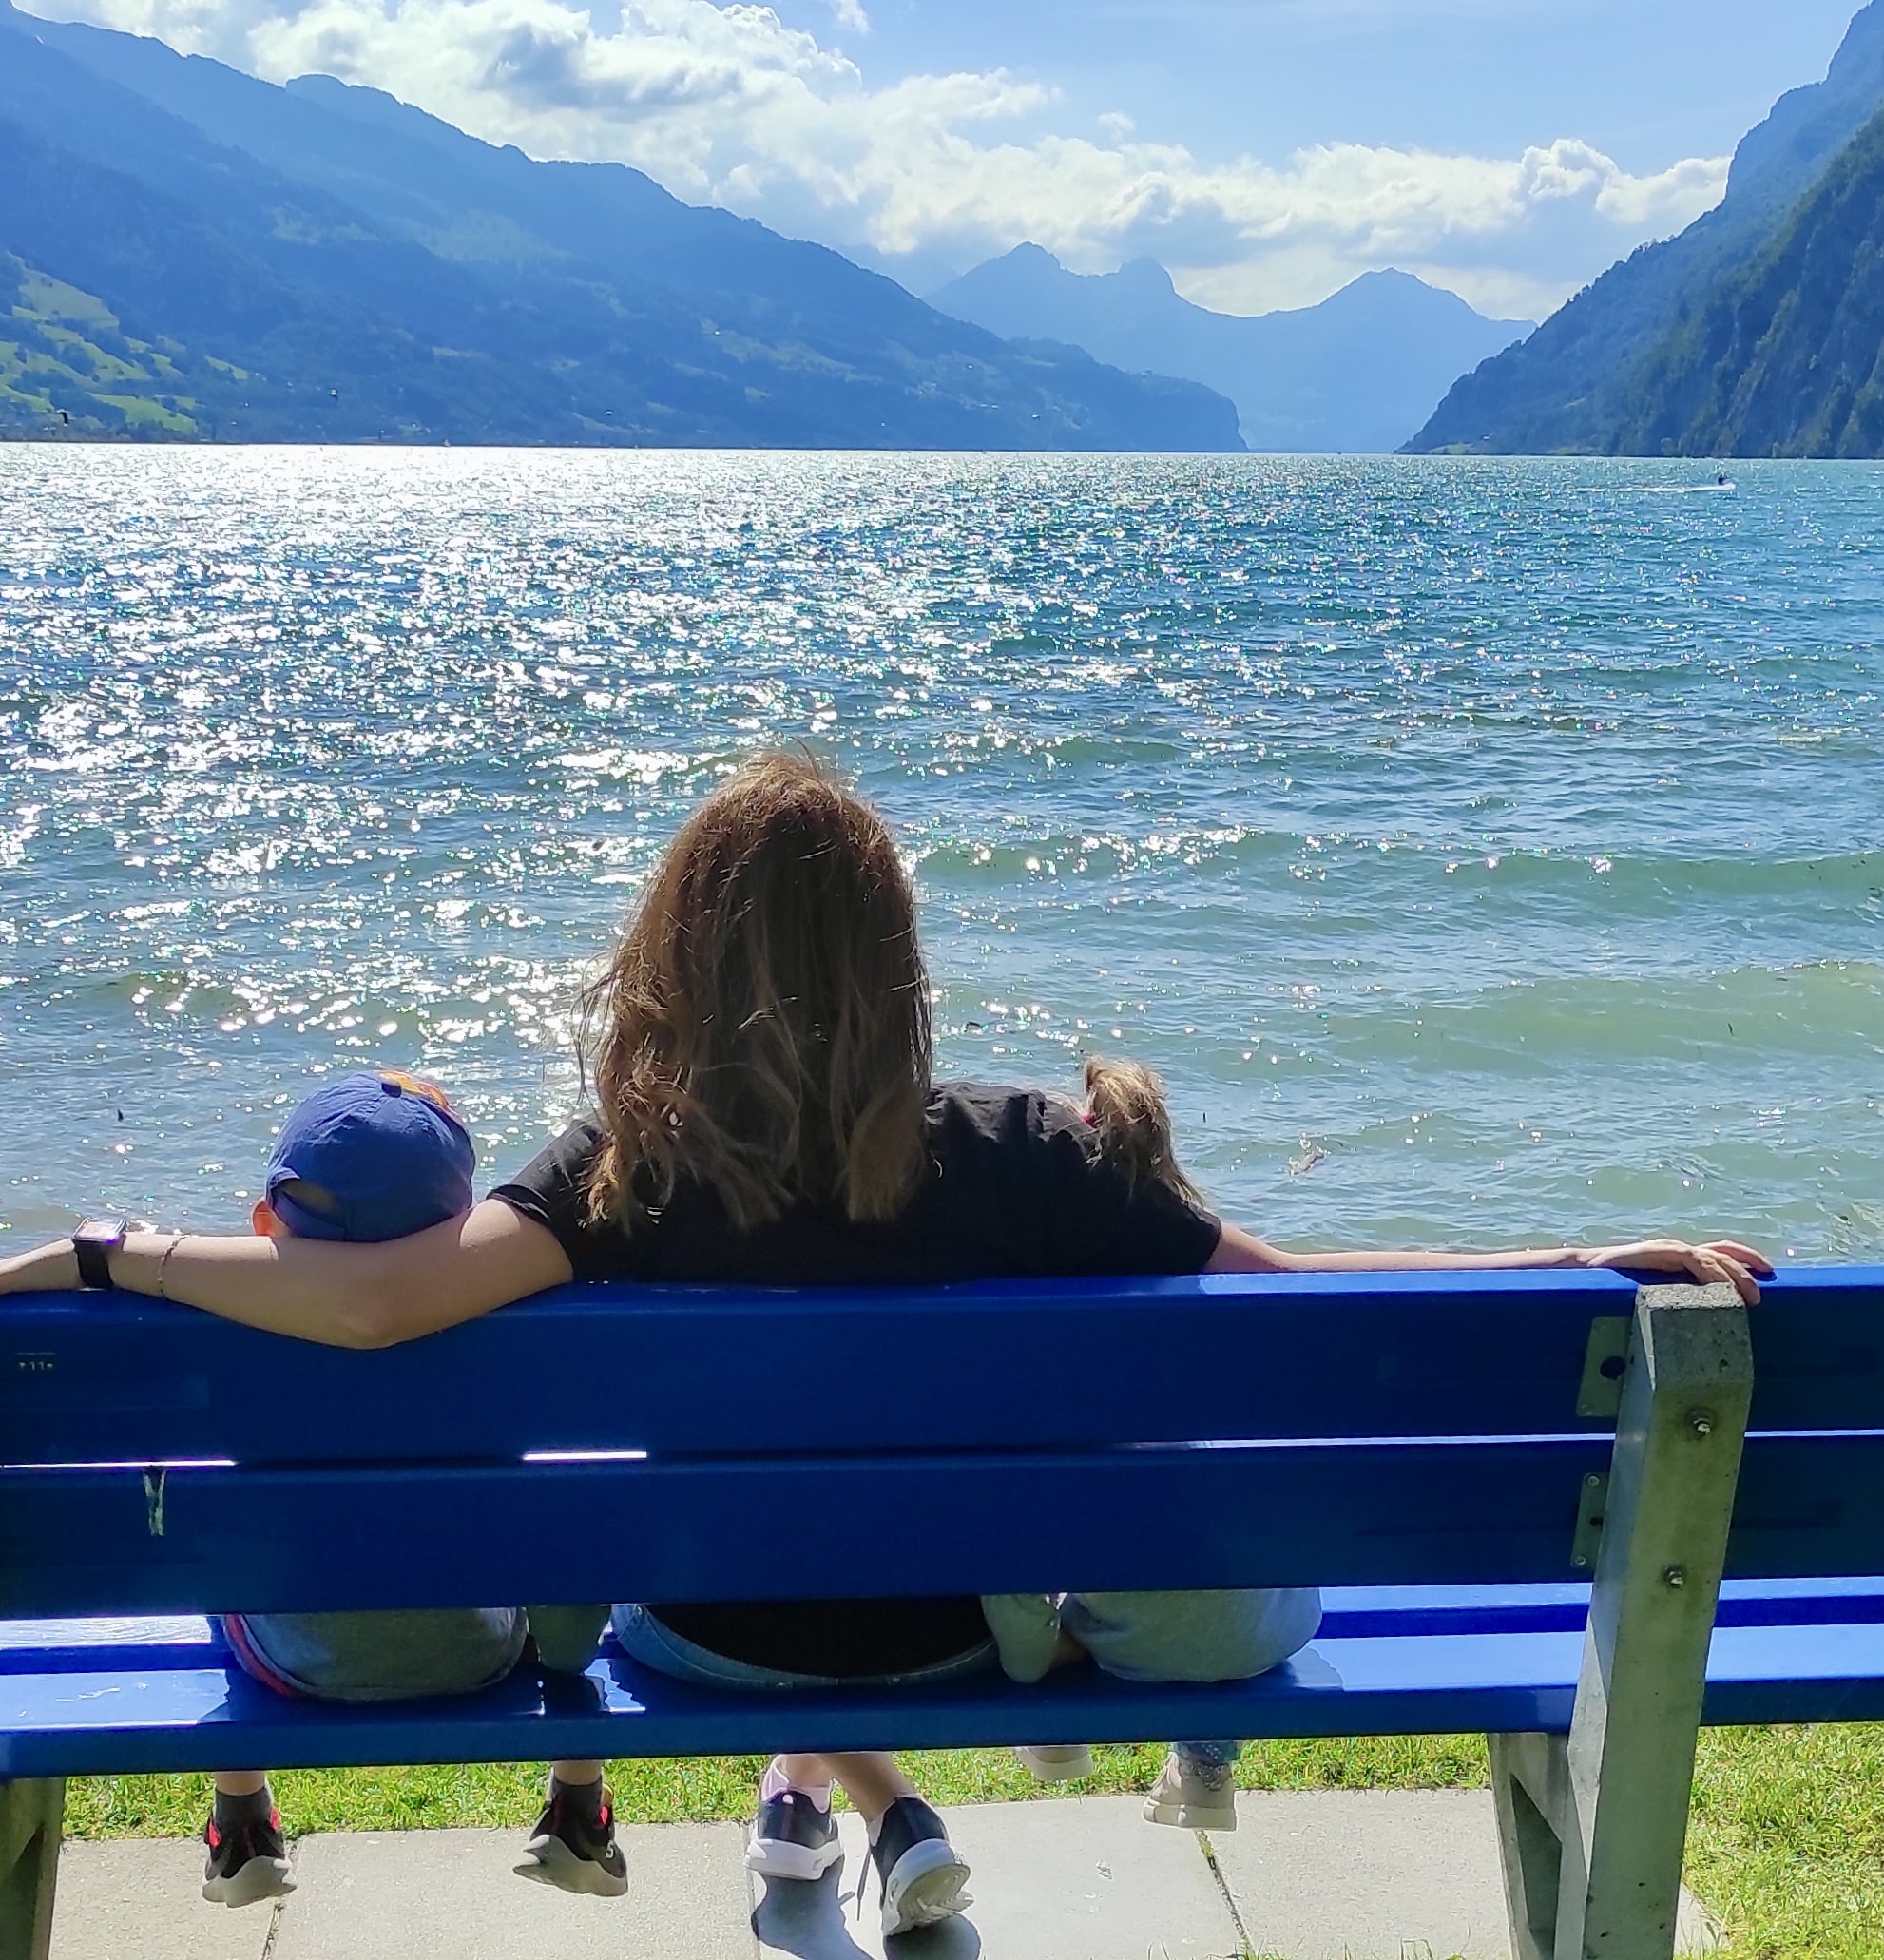 Счастливая Швейцария живет под мирным небом более двухсот лет. (Из архива украинской семьи)